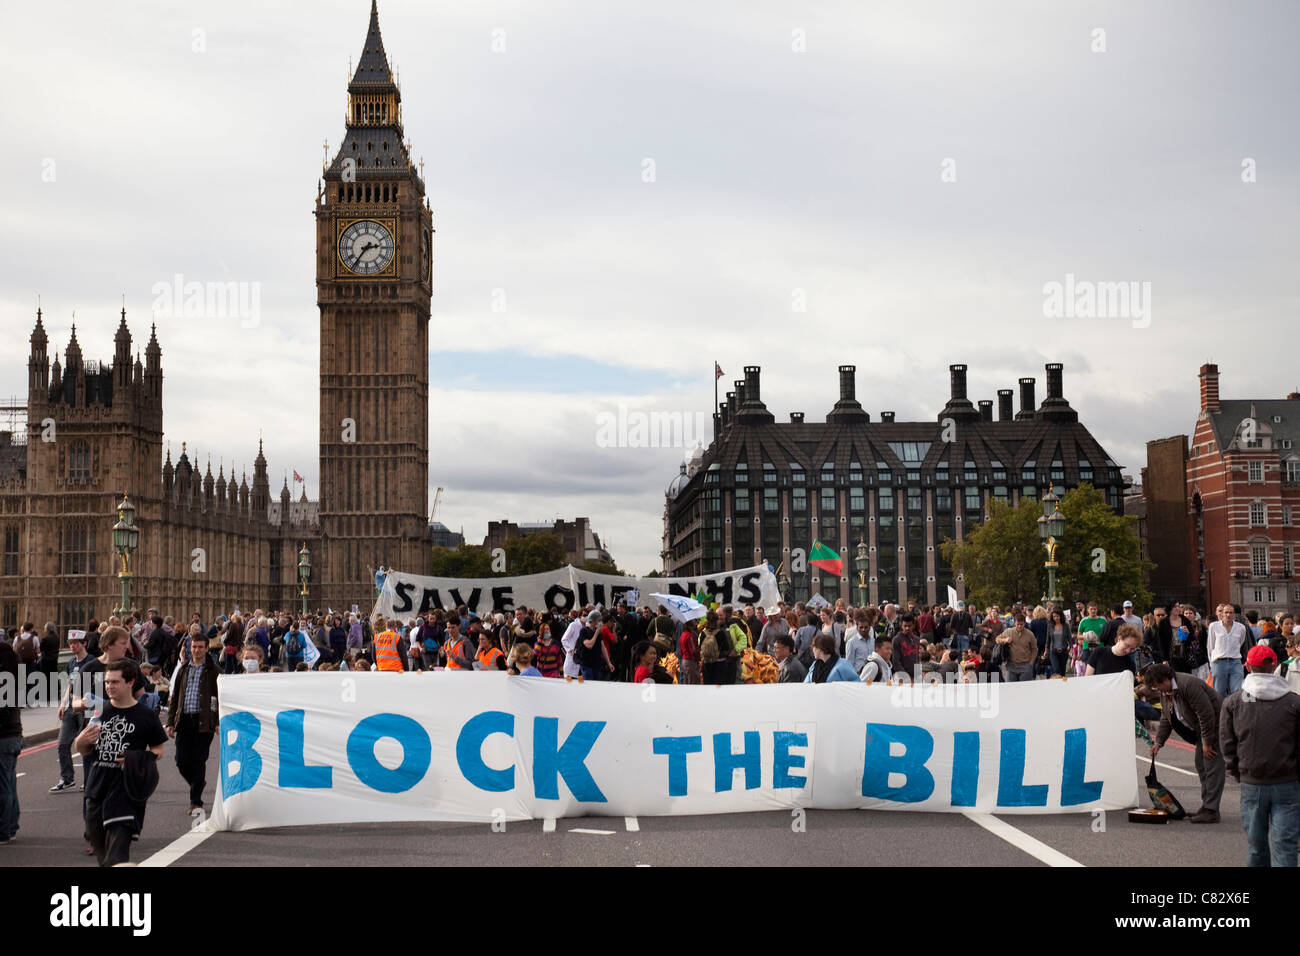 Regno Unito intonso arrestare il Westminster Bridge, Londra in una protesta / dimostrazione per bloccare il NHS bill. Foto Stock